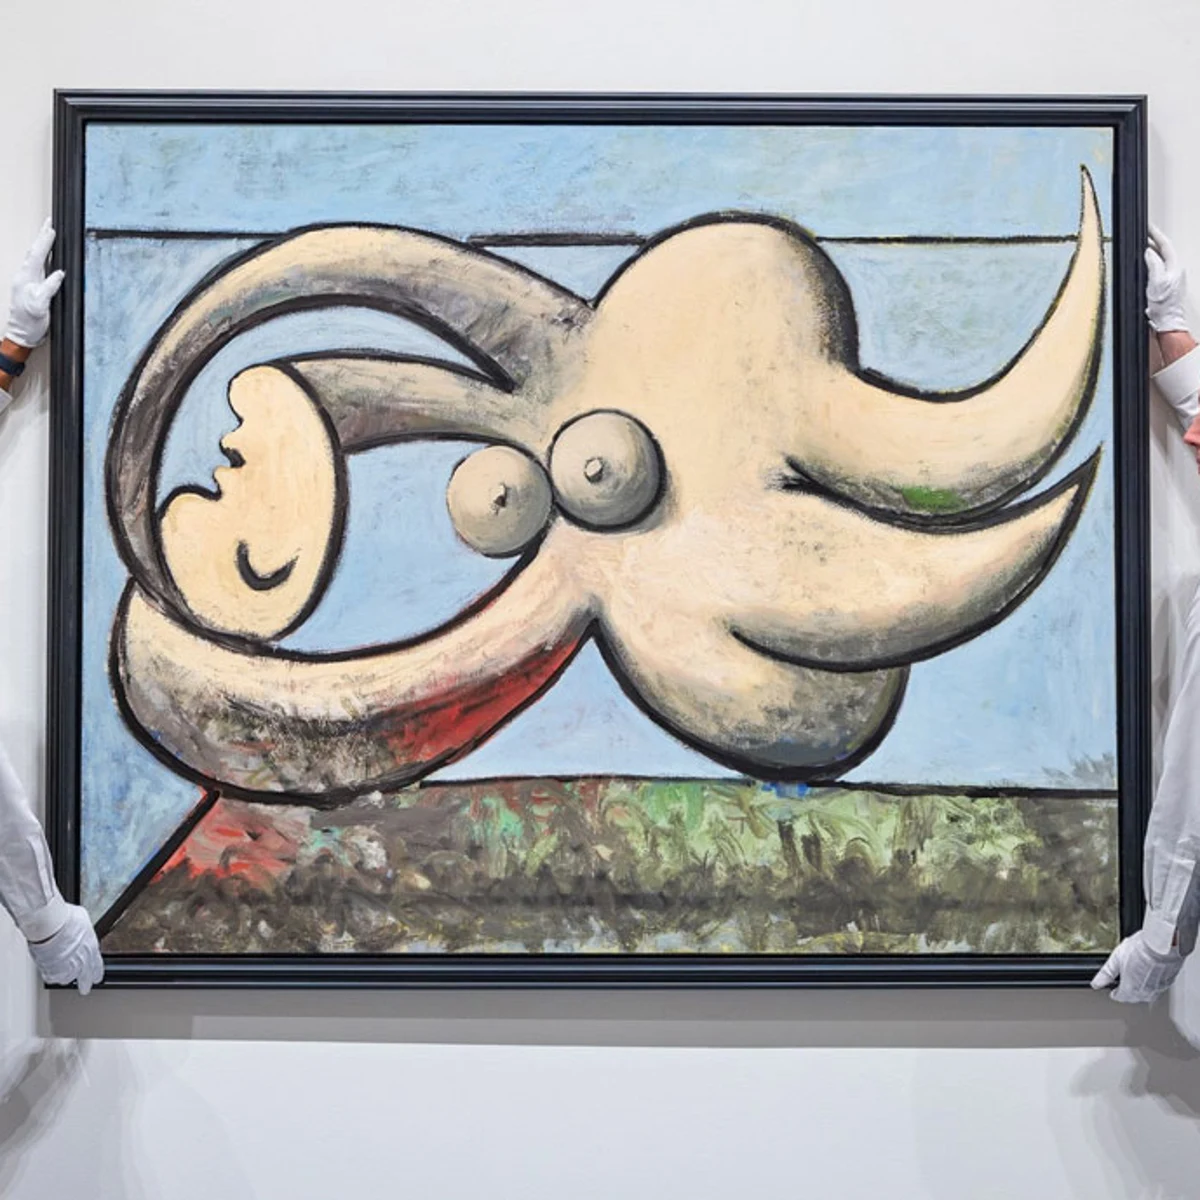 cuadro nue coucheé' de Picasso recauda 67,5 millones de euros en una subasta